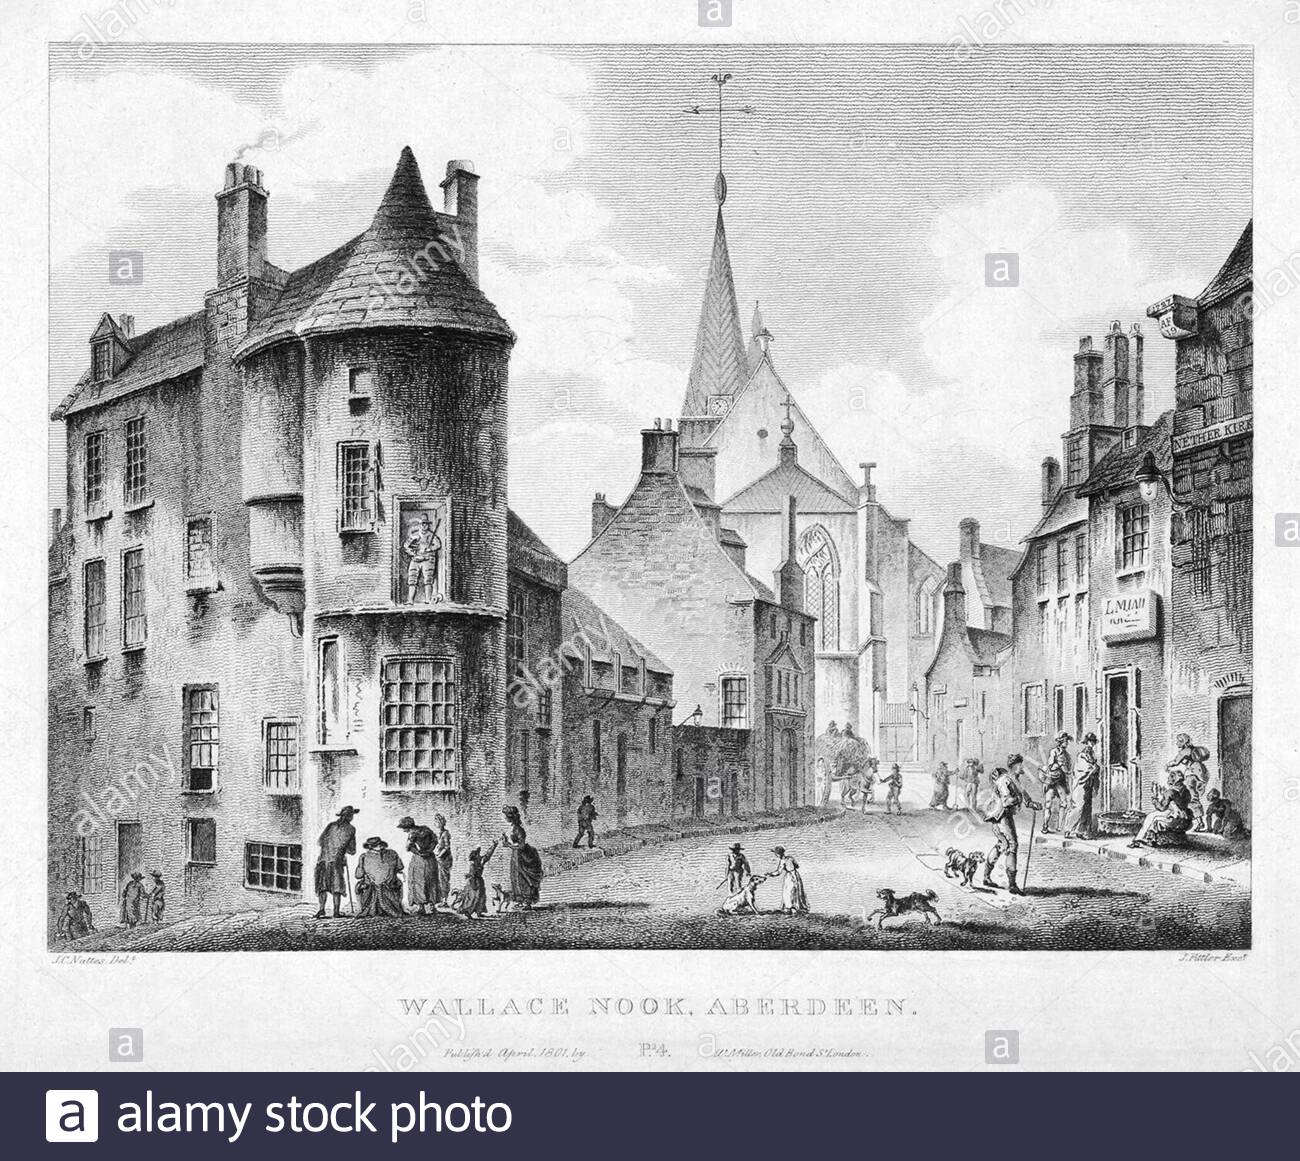 Wallace Nook, Aberdeen, Scozia, incisione d'annata del 1804 Foto Stock